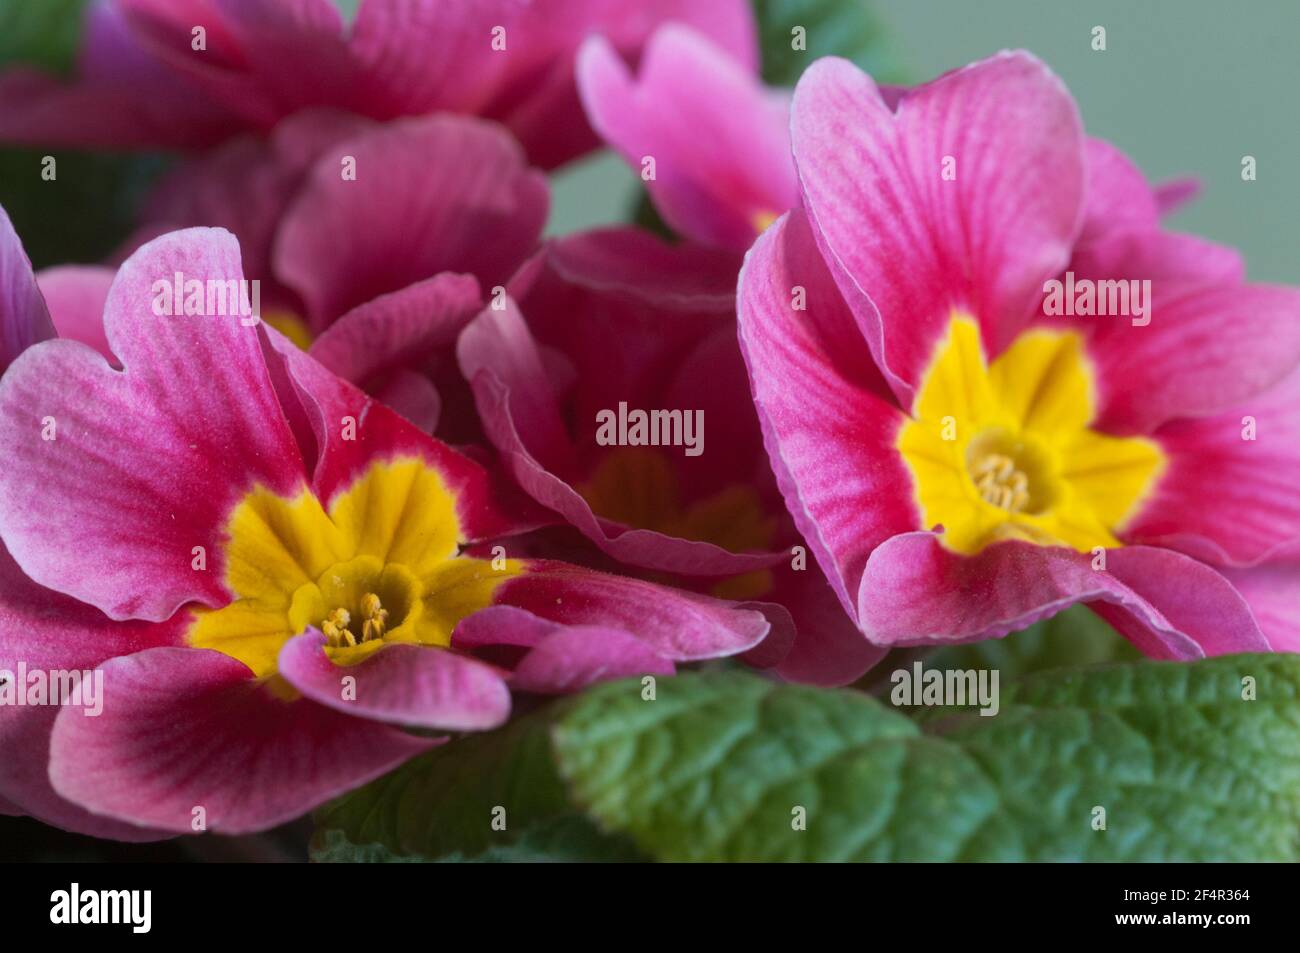 Common primrose flowers, close up shot, local focus Stock Photo